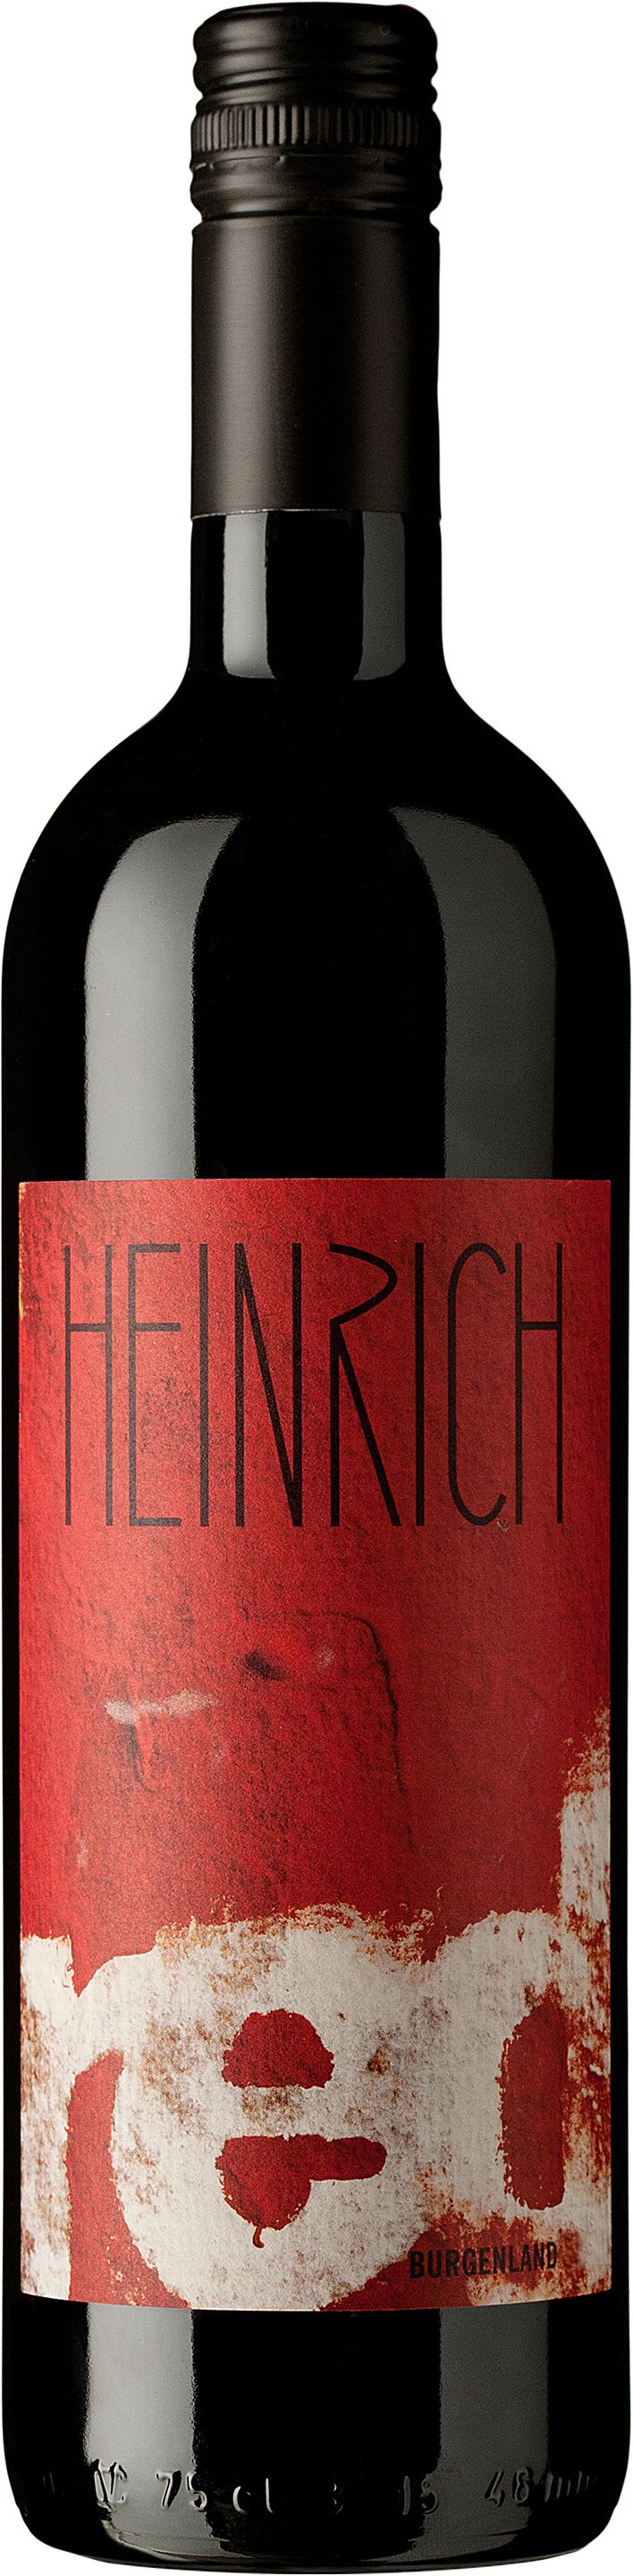 Heinrich, Red, 2016